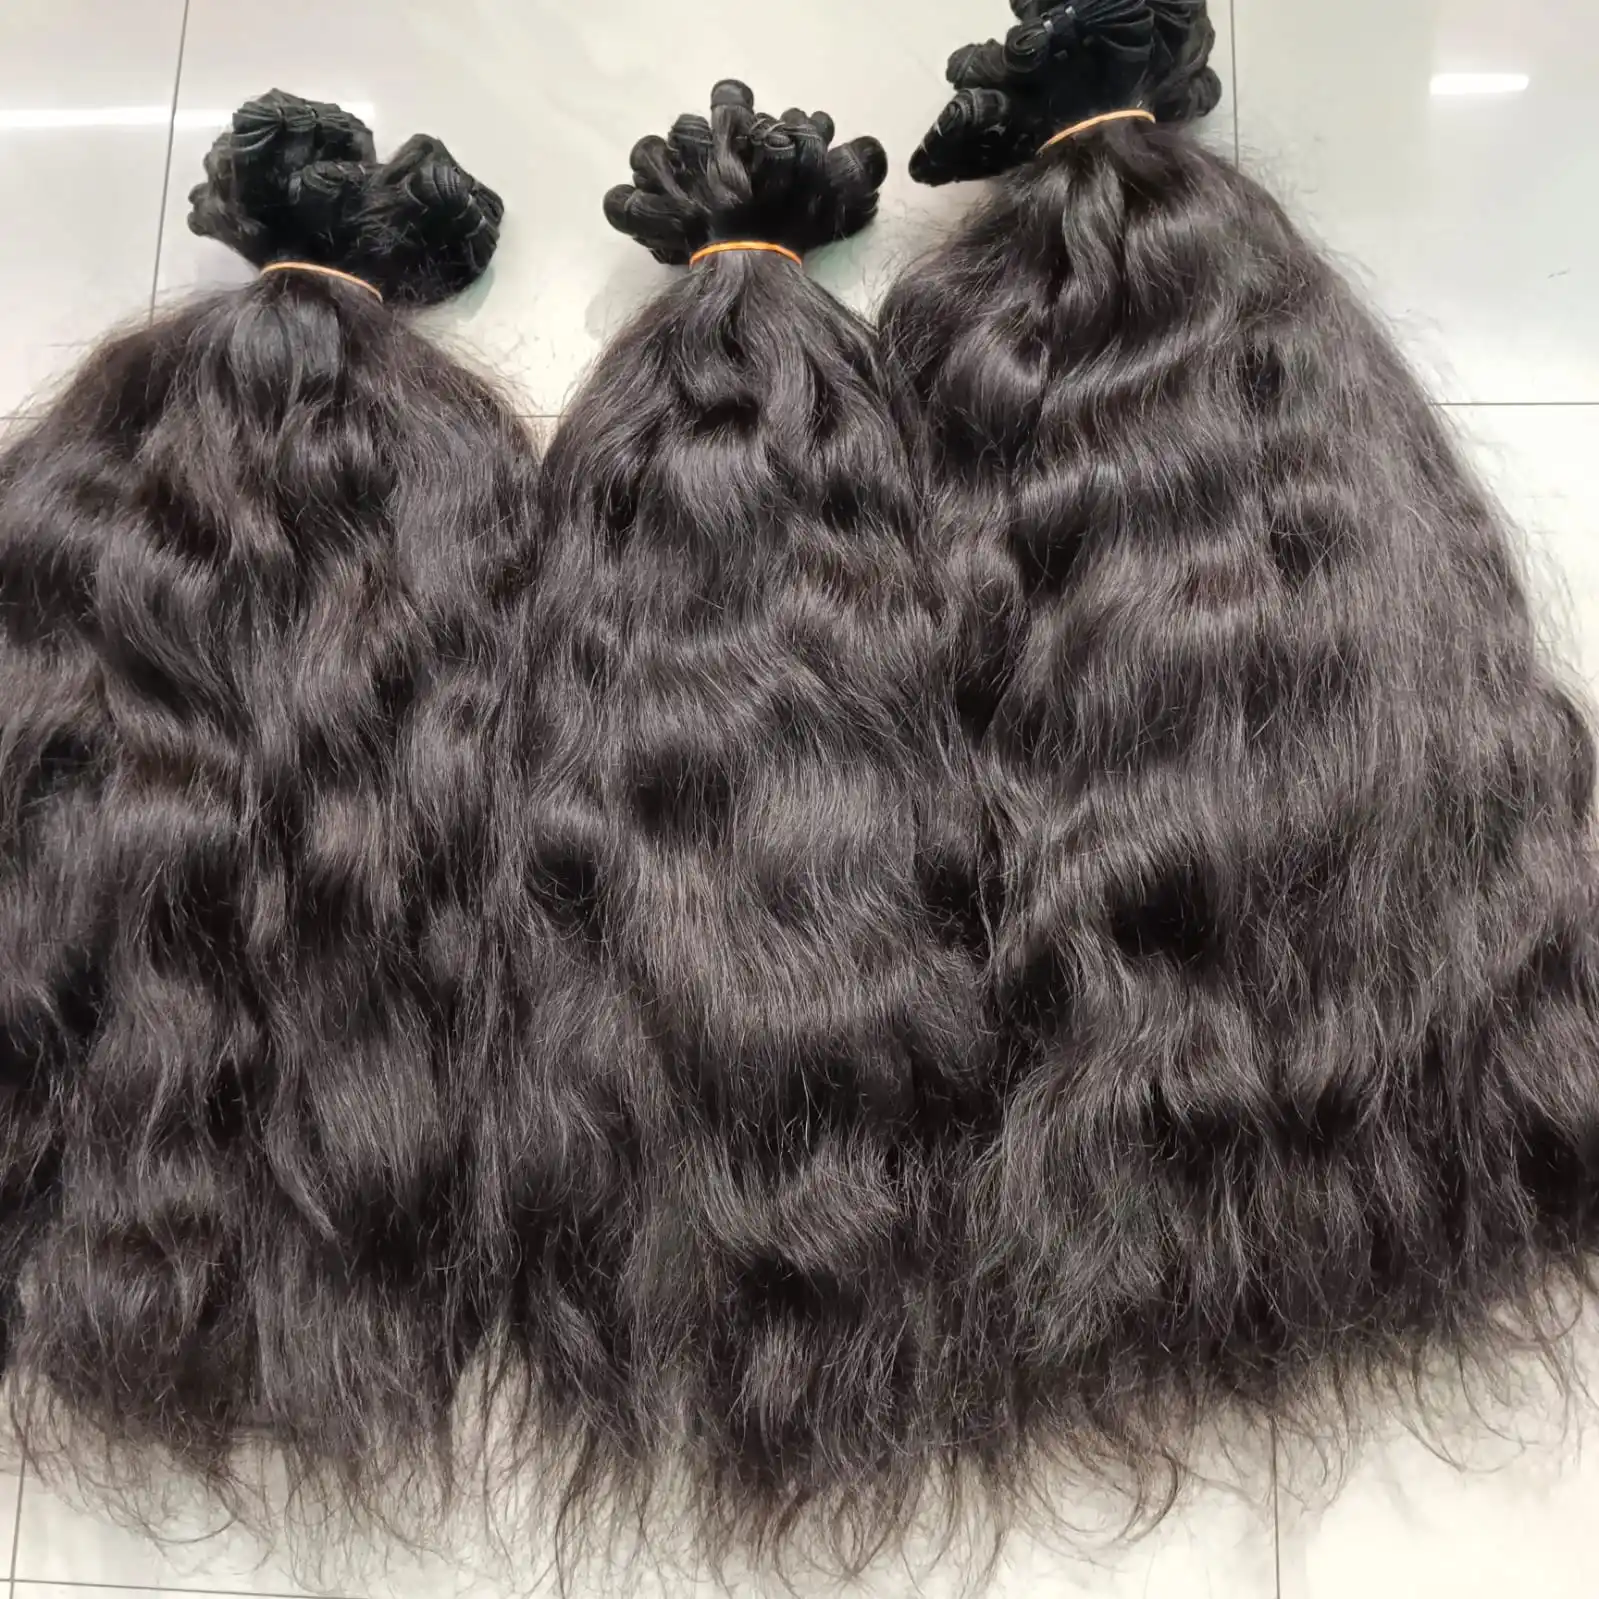 Extensão de cabelo virgem liso e sedoso, matéria-prima de doador único, cor natural, elegante, indiano 100% original, alta qualidade